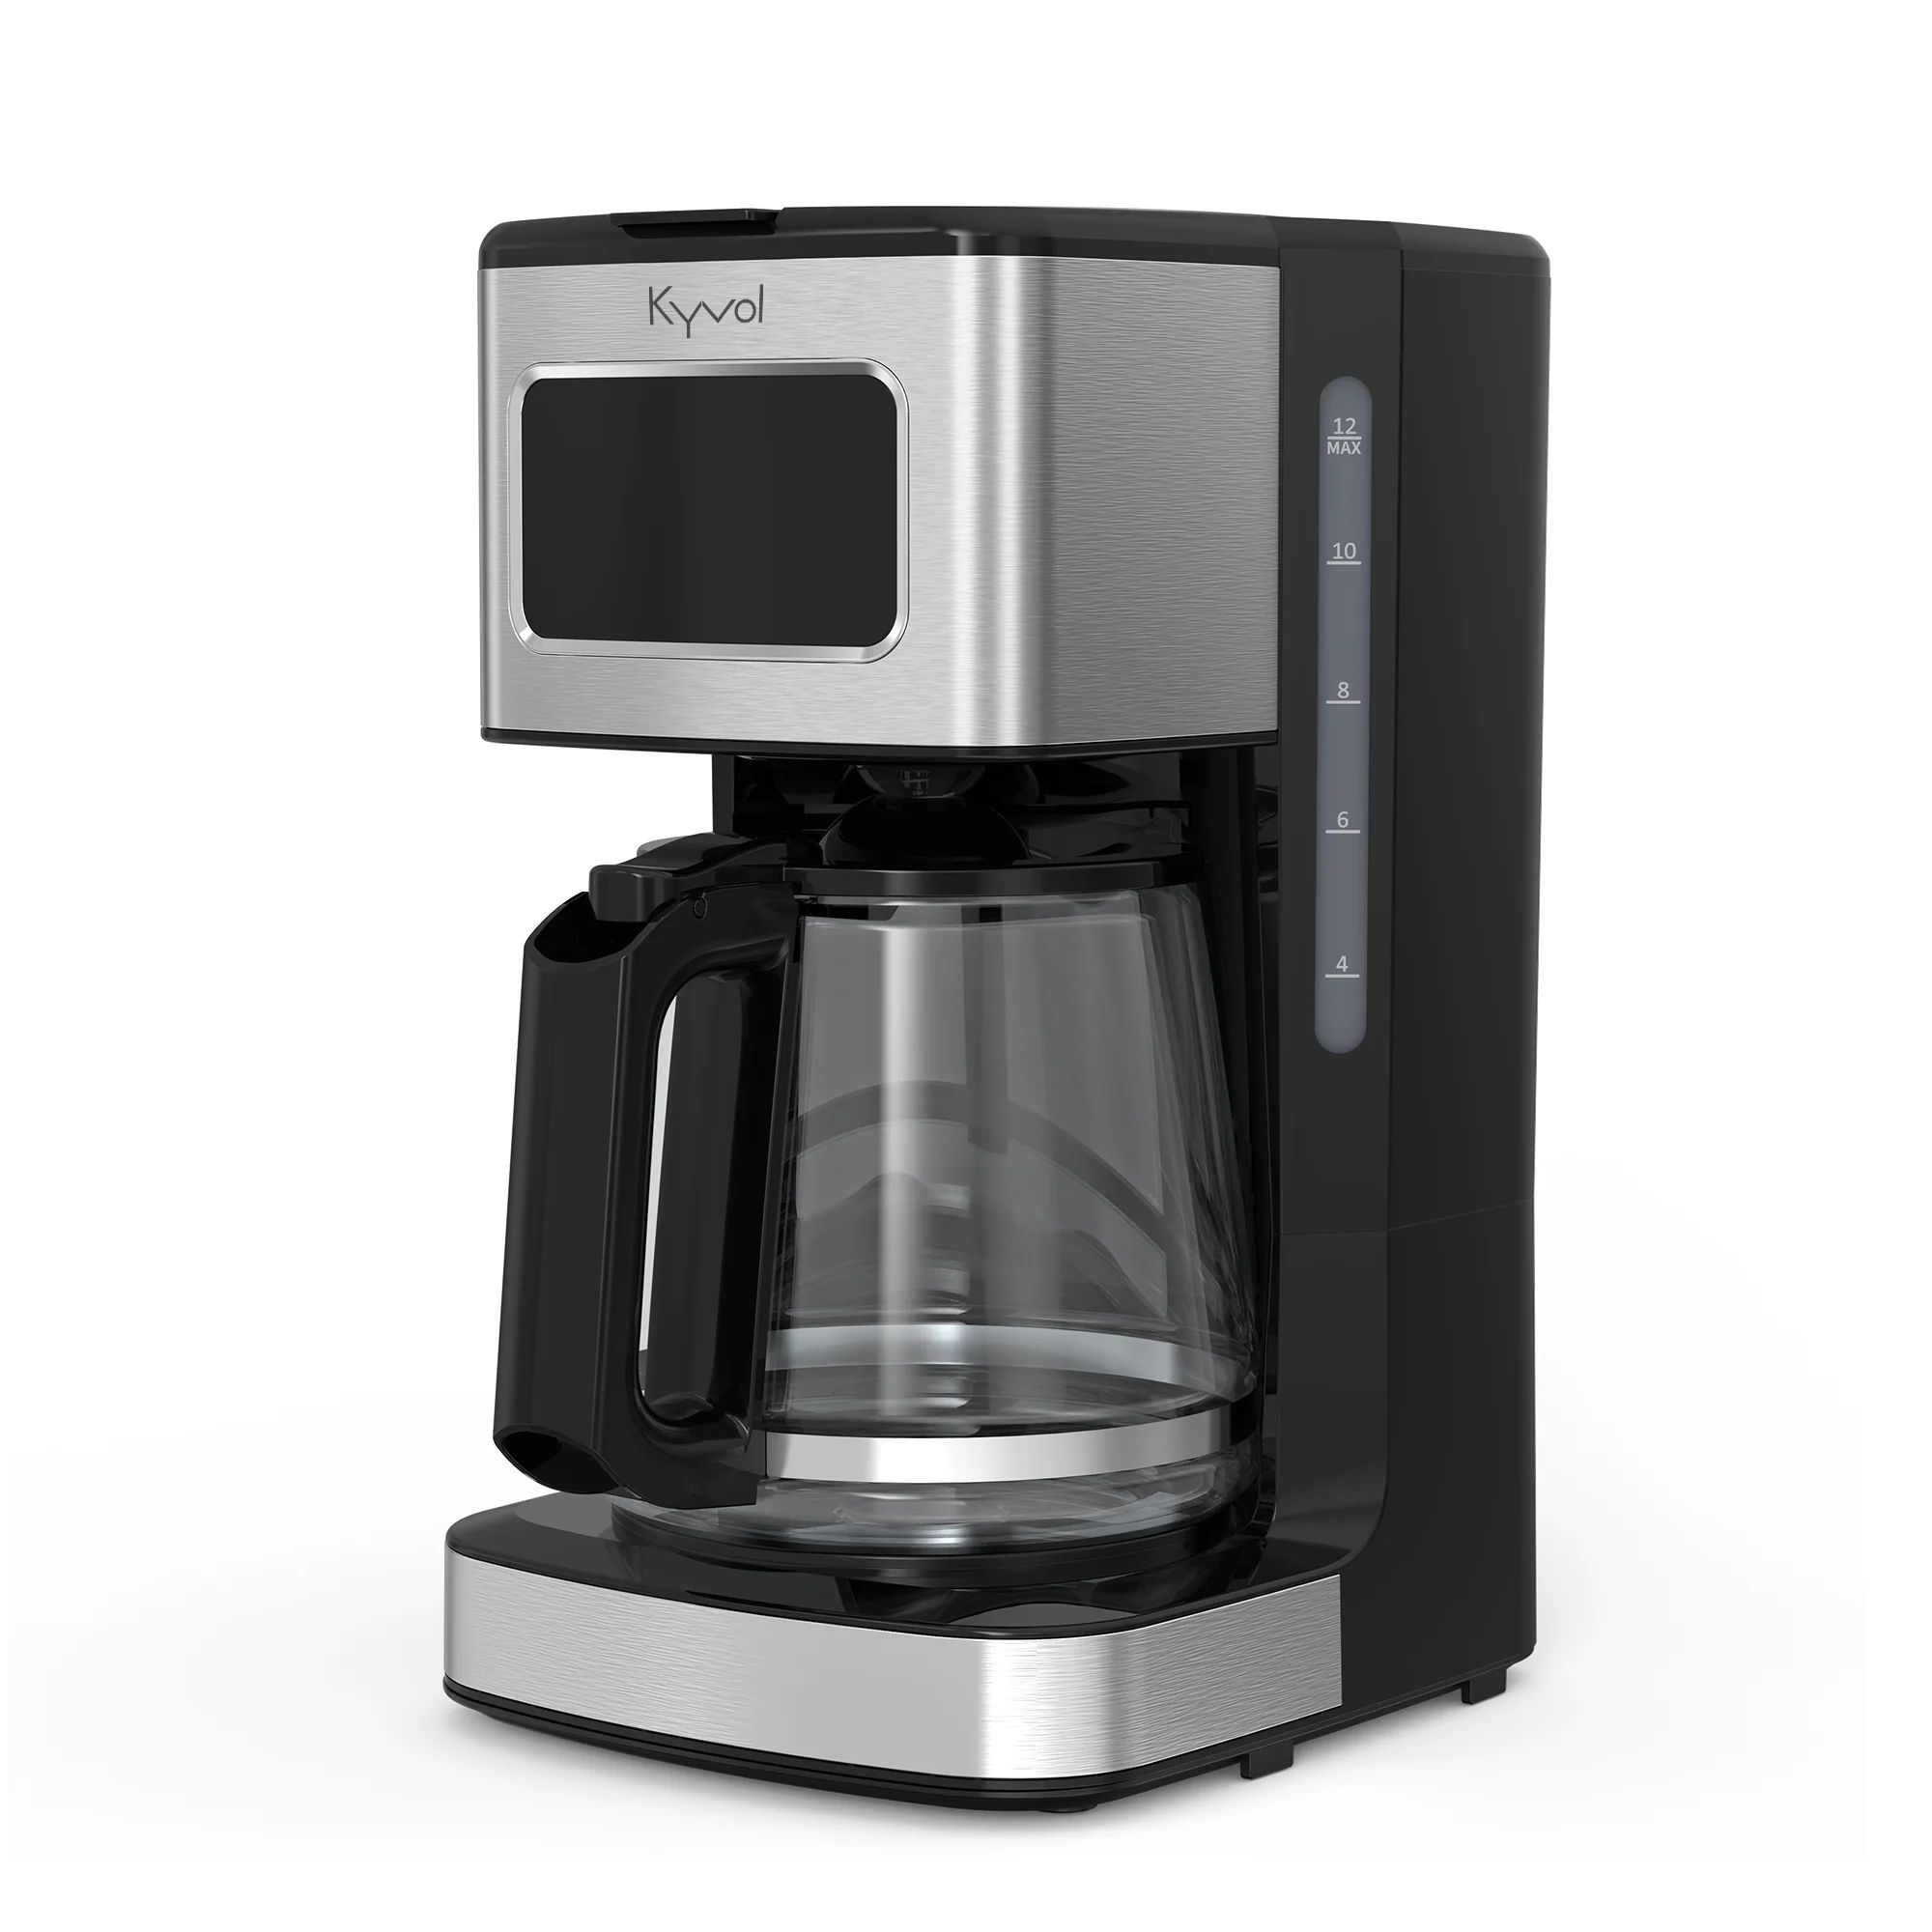 Кофеварка Kyvol Best Value Coffee Maker CM05 CM-DM121A кофеварка kyvol premium drip coffee maker cm06 cm dm101a